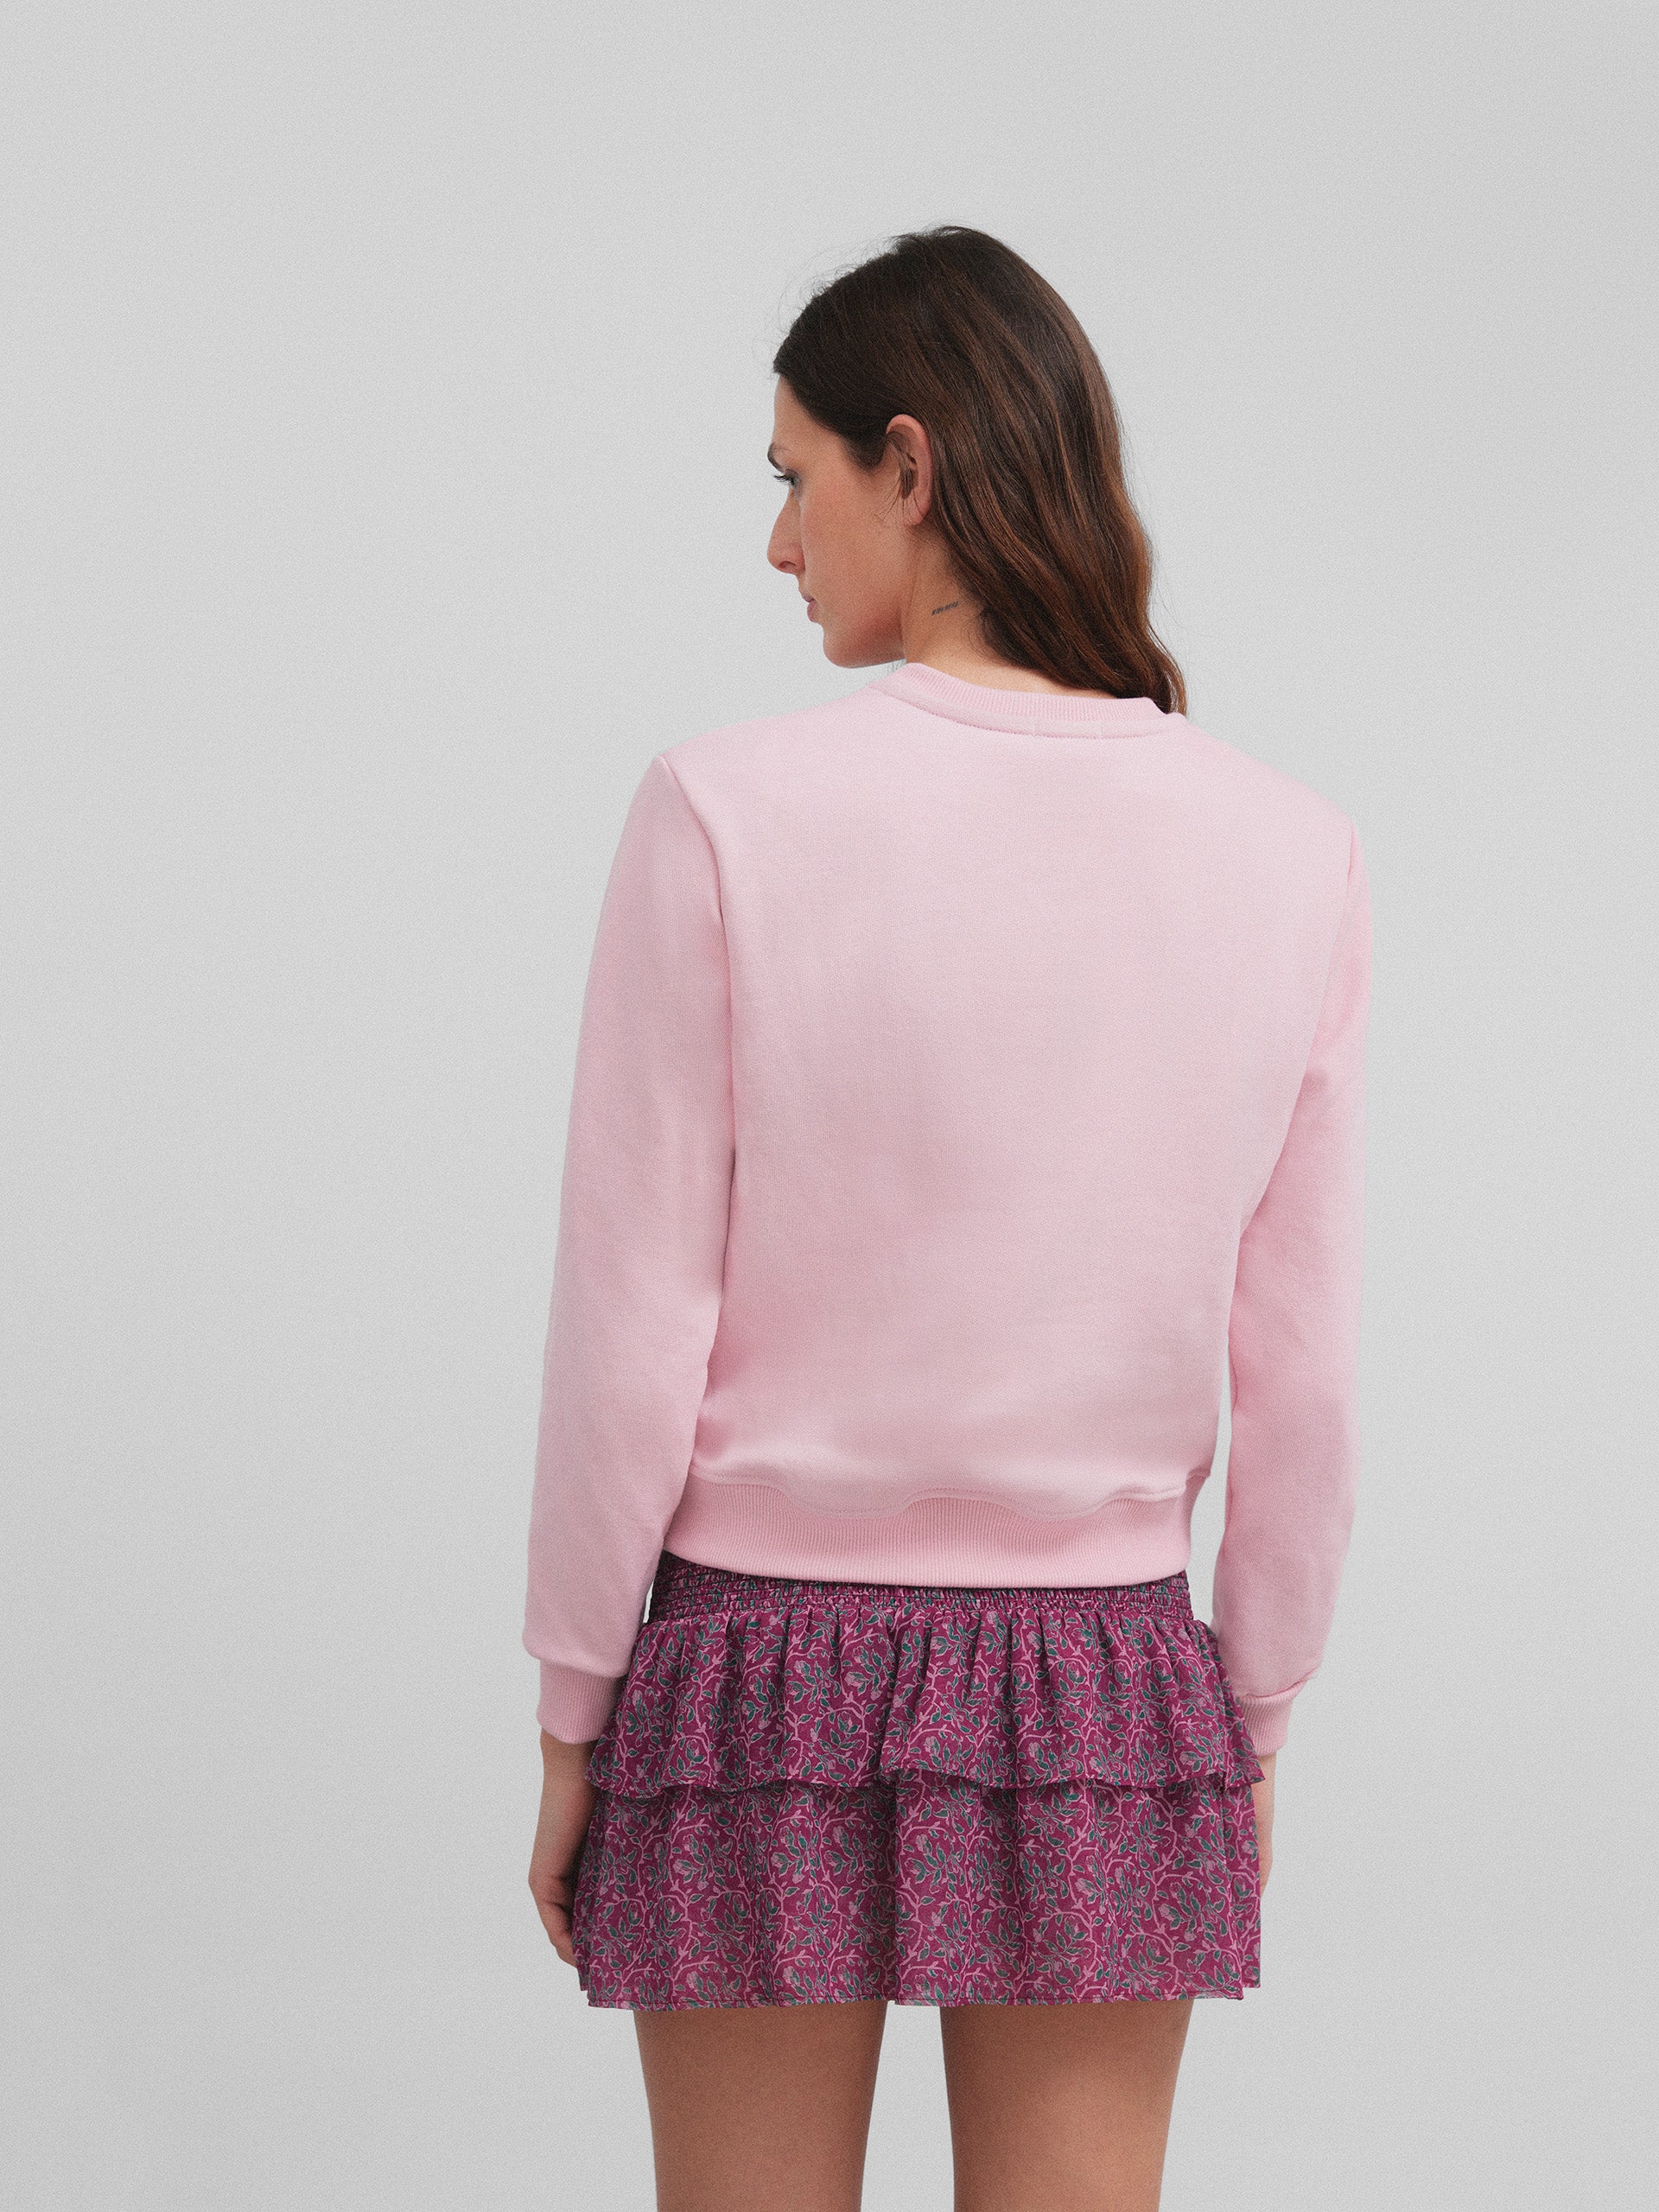 Women's pink circle racket sweatshirt